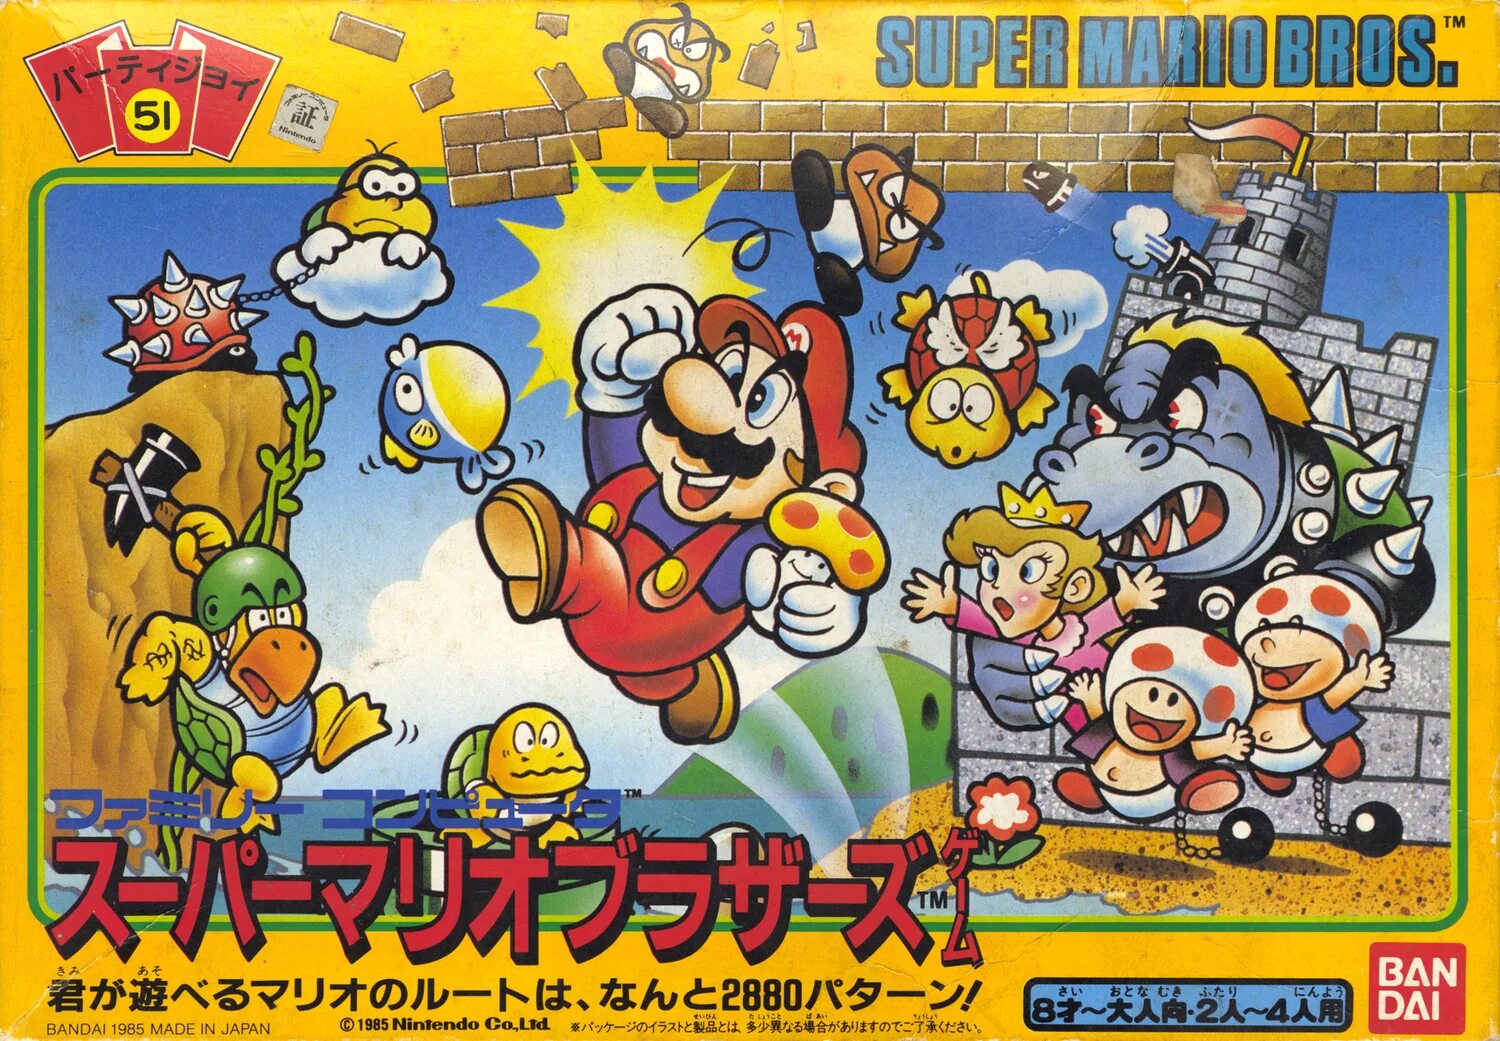 Mario bros special. Super Mario Bros 1985 NES. Super Mario Bros NES обложка. Super Mario Bros 1985 Nintendo. Super Mario brothers 1985.